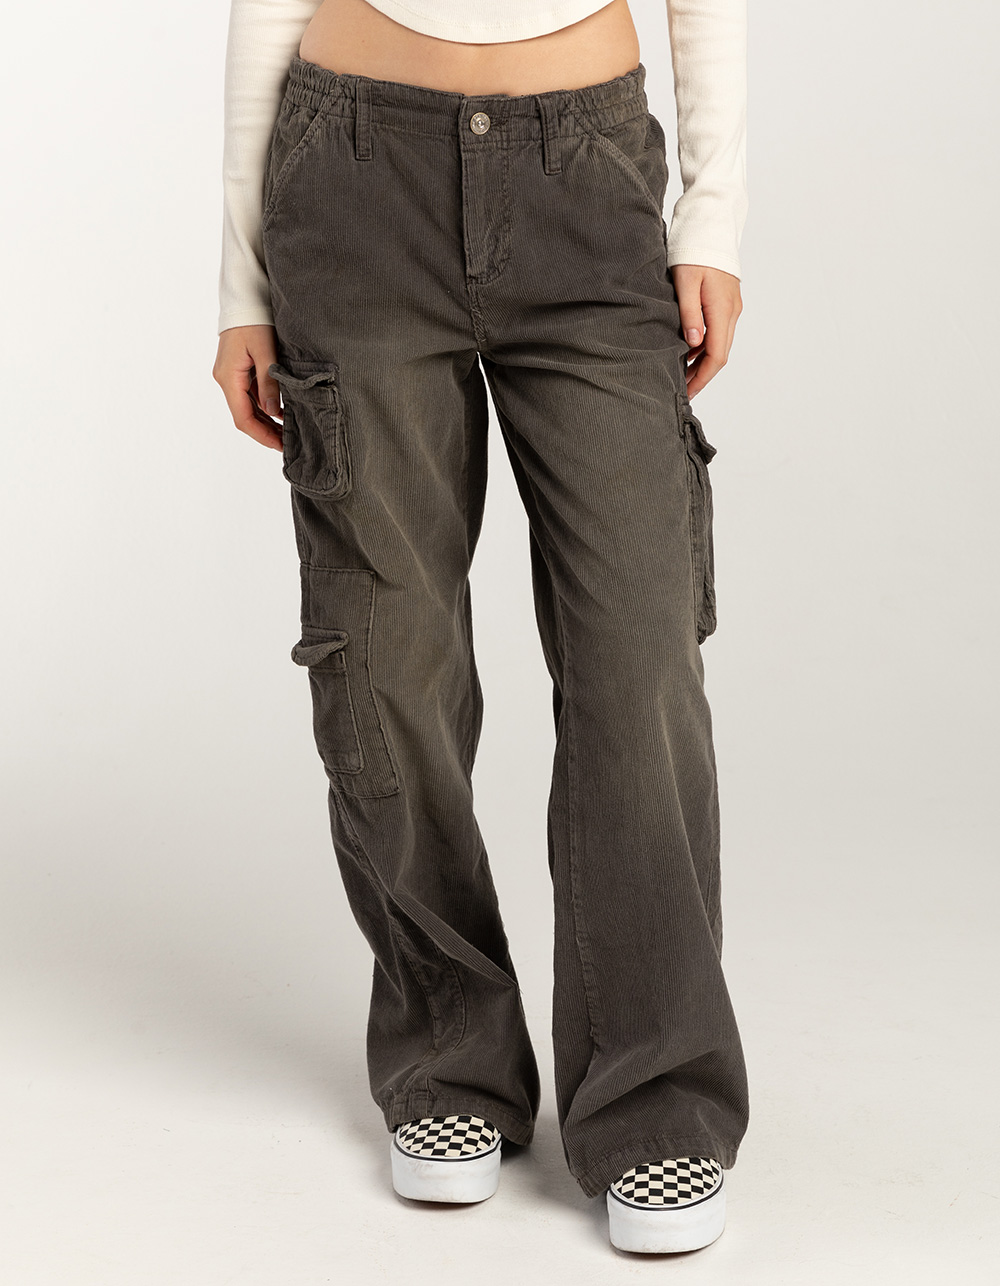 Look: The Y2k-inspired Way To Style Dickies Work Pants